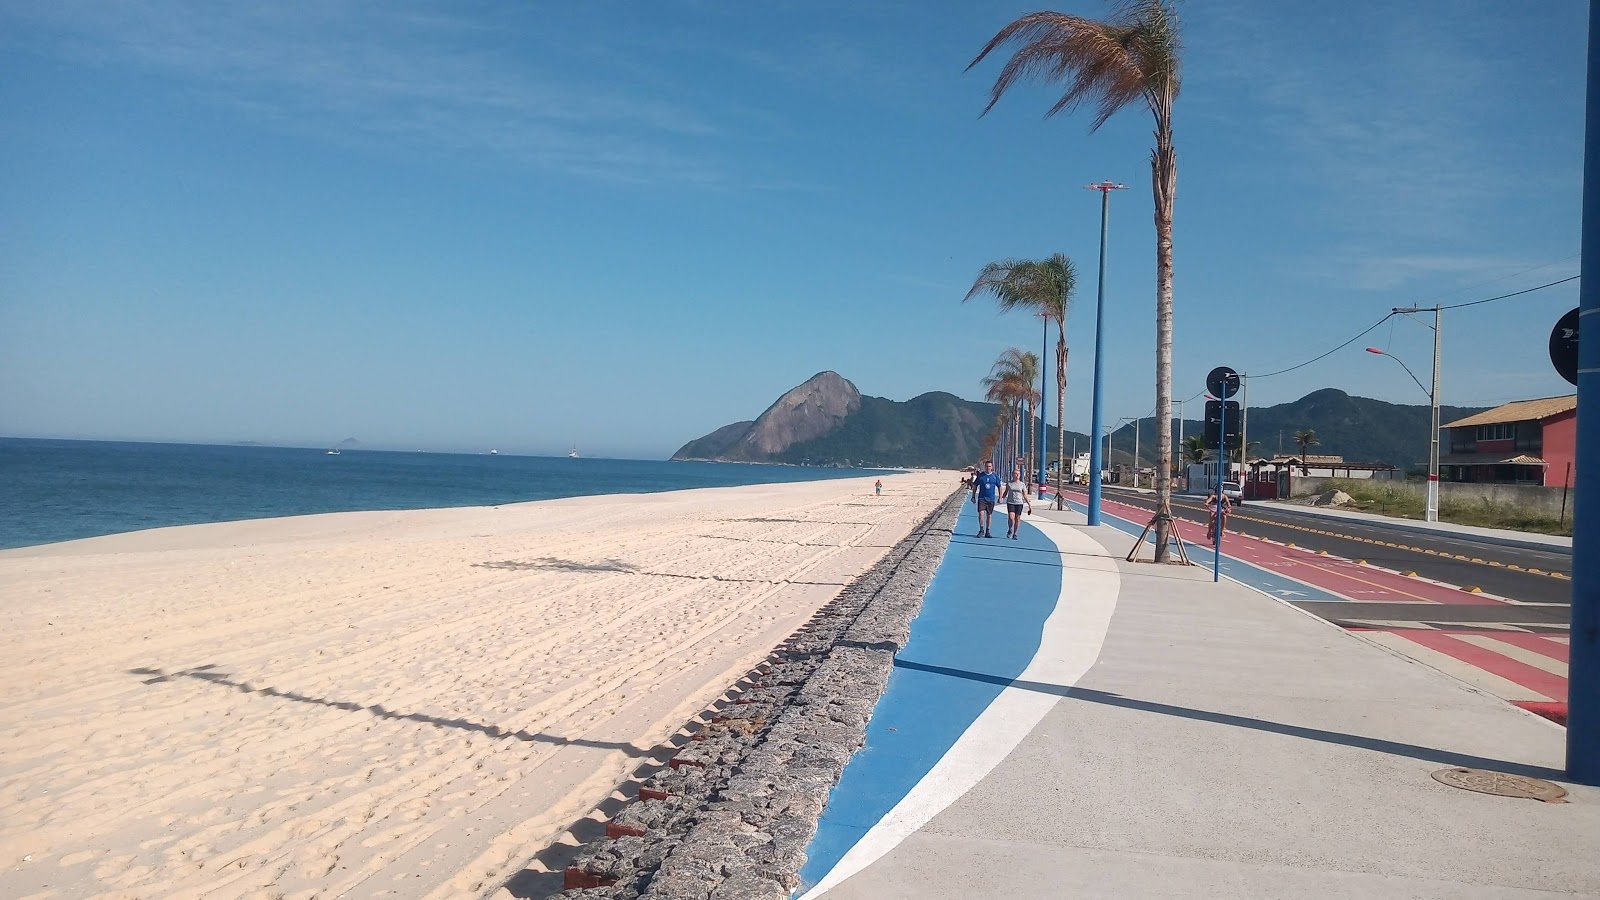 Praia do Frances'in fotoğrafı - rahatlamayı sevenler arasında popüler bir yer